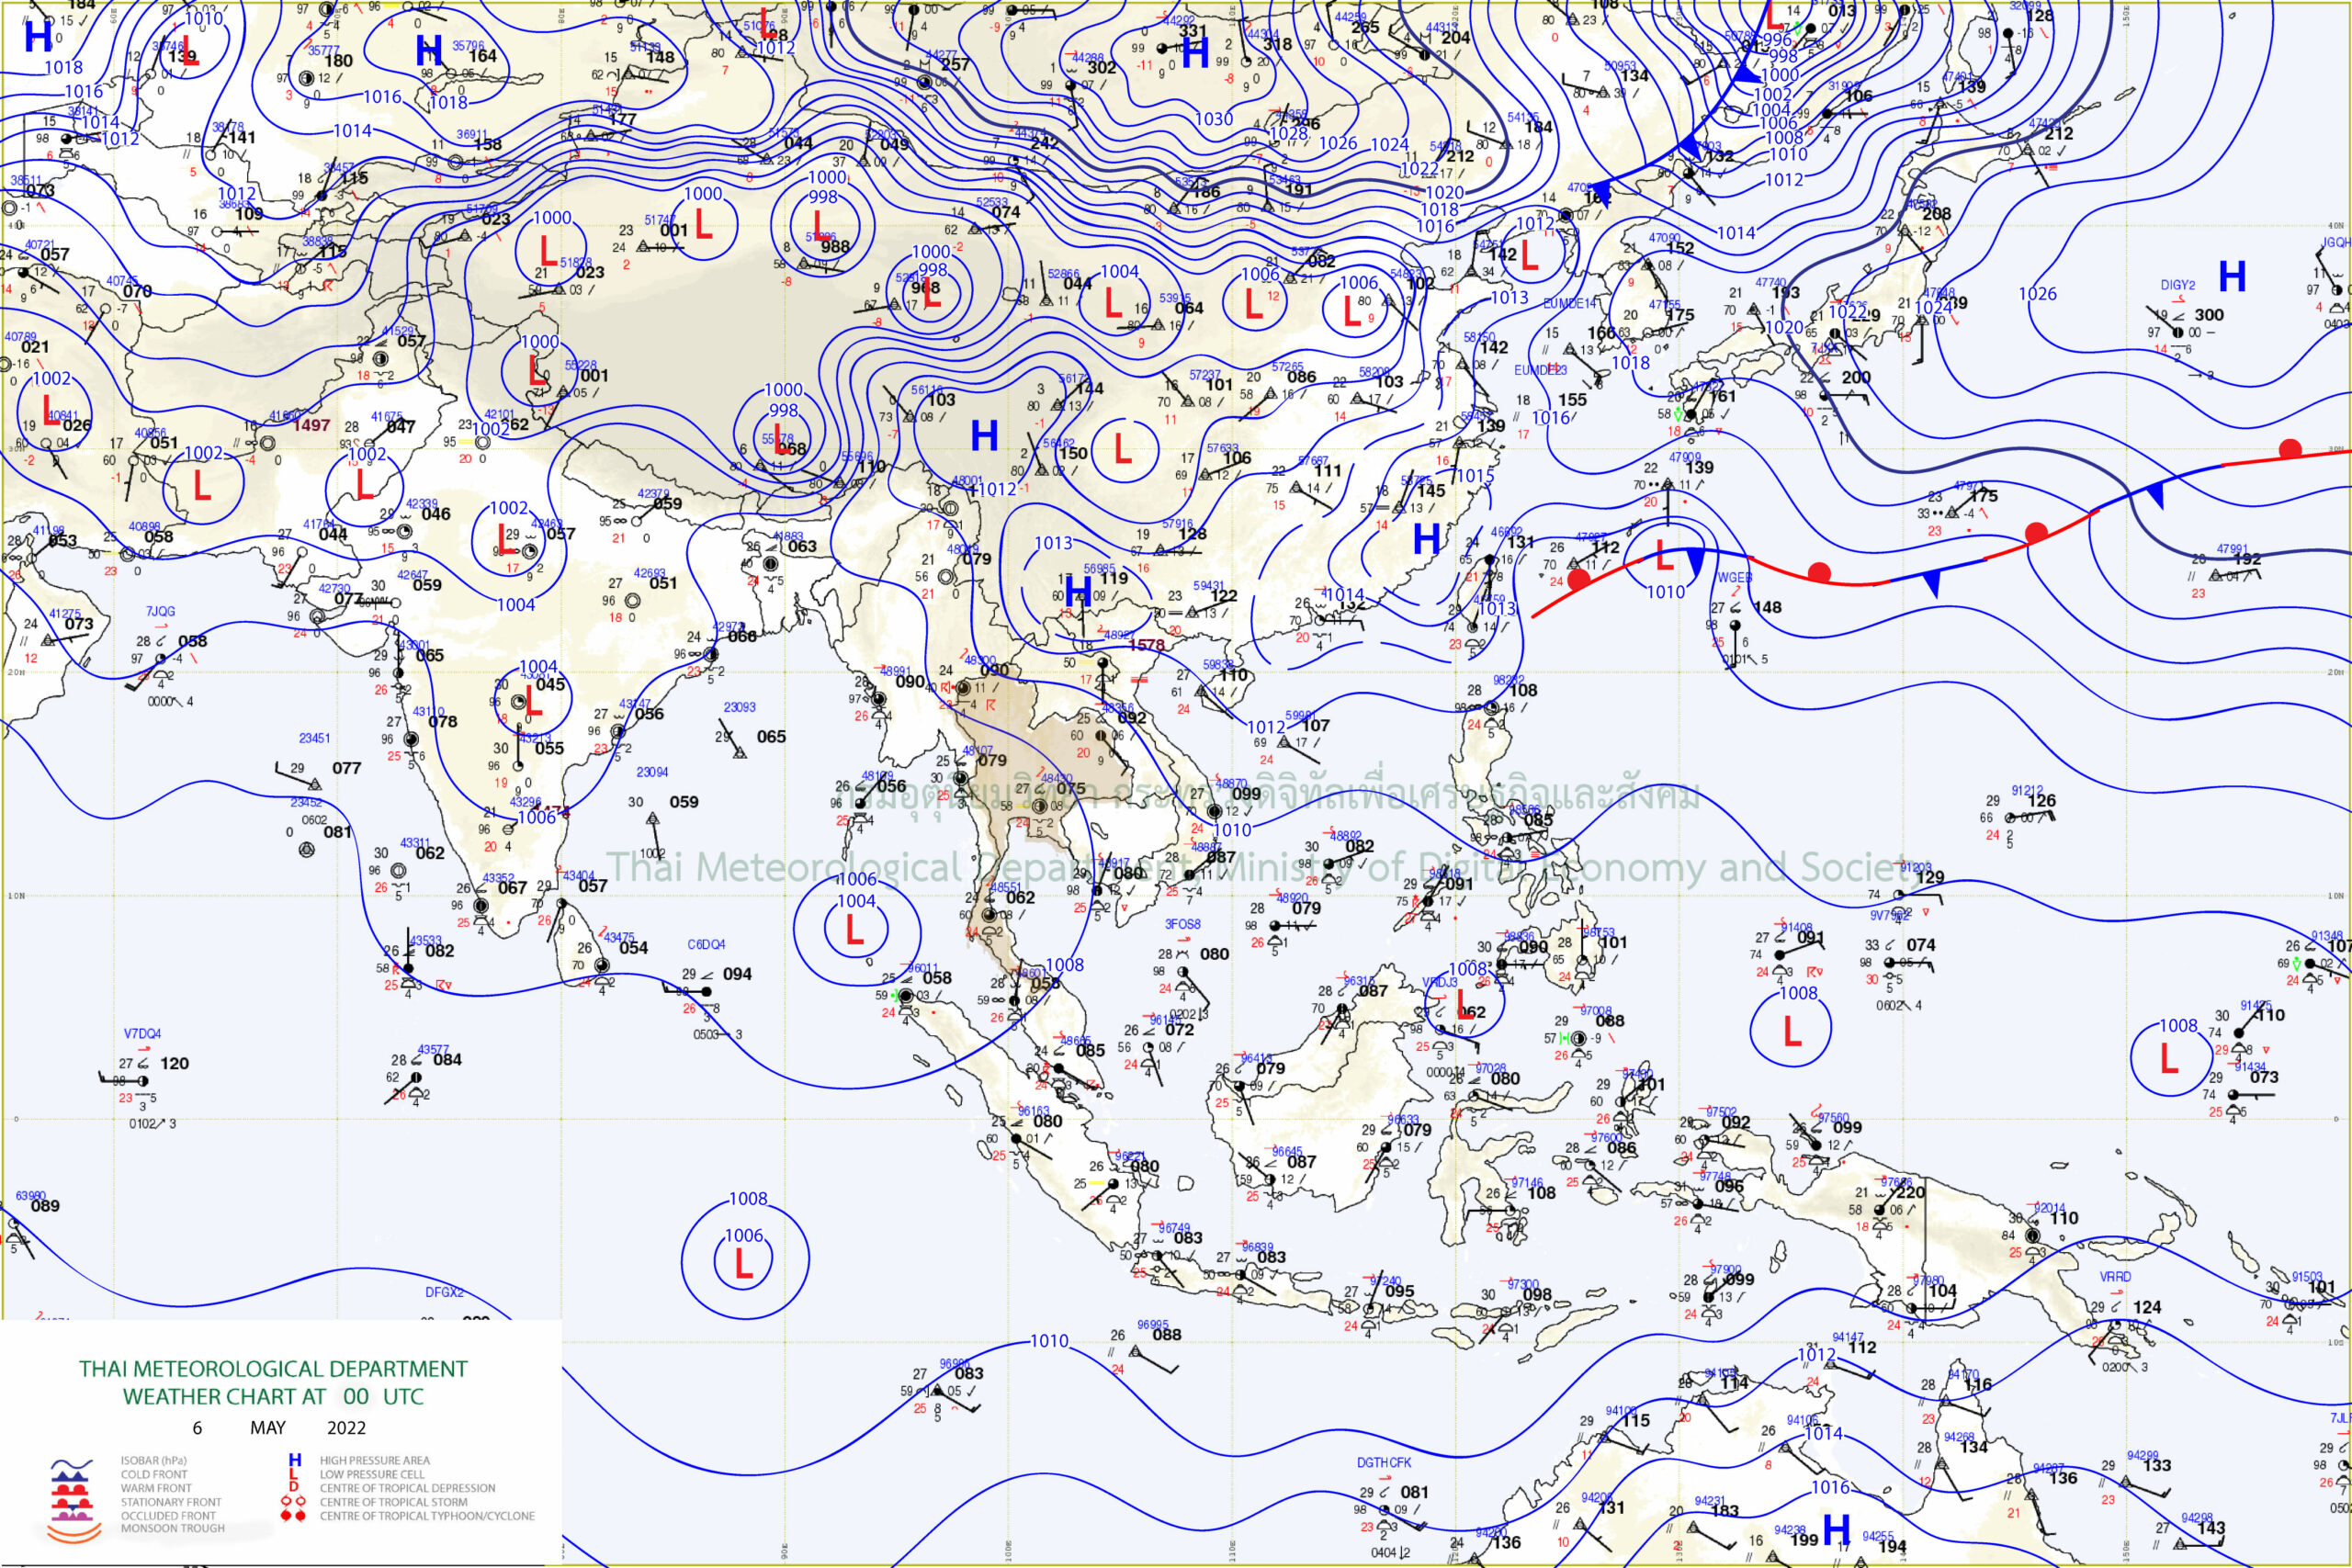 อธิบายแผนที่ : แผนที่อากาศผิวพื้นวันที่ 6 พฤษภาคม 2565 เวลา 07.00 น.บริเวณความกดอากาศสูงหรือมวลอากาศเย็นกำลังอ่อนปกคลุมประเทศไทยตอนบนและทะเลจีนใต้ ในขณะที่มีหย่อมความกดอากาศต่ำปกคลุมบริเวณอ่าวเบงกอลตอนกลาง